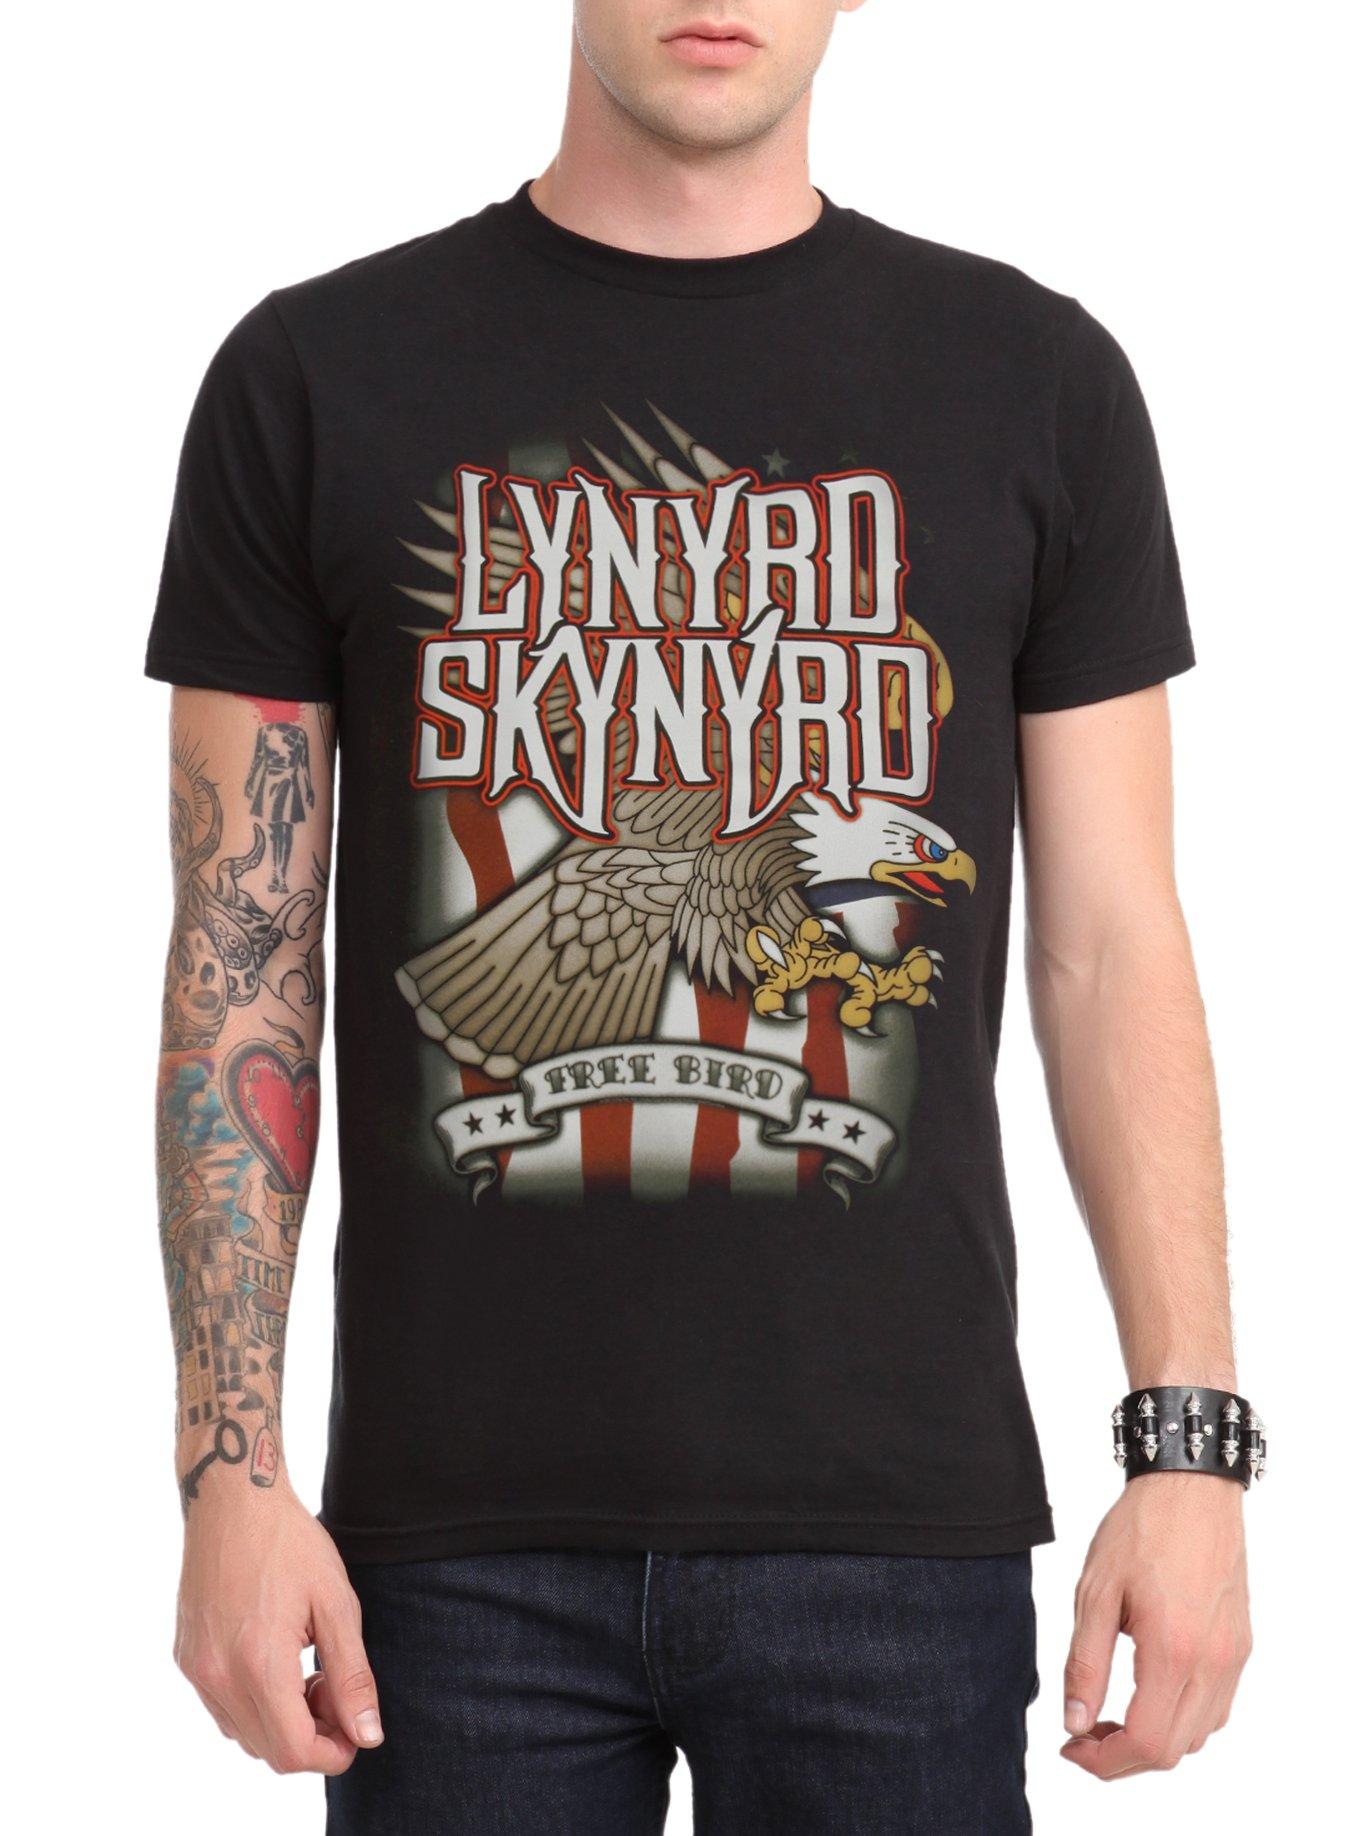 Lynyrd Skynyrd Free Bird T-Shirt, BLACK, hi-res